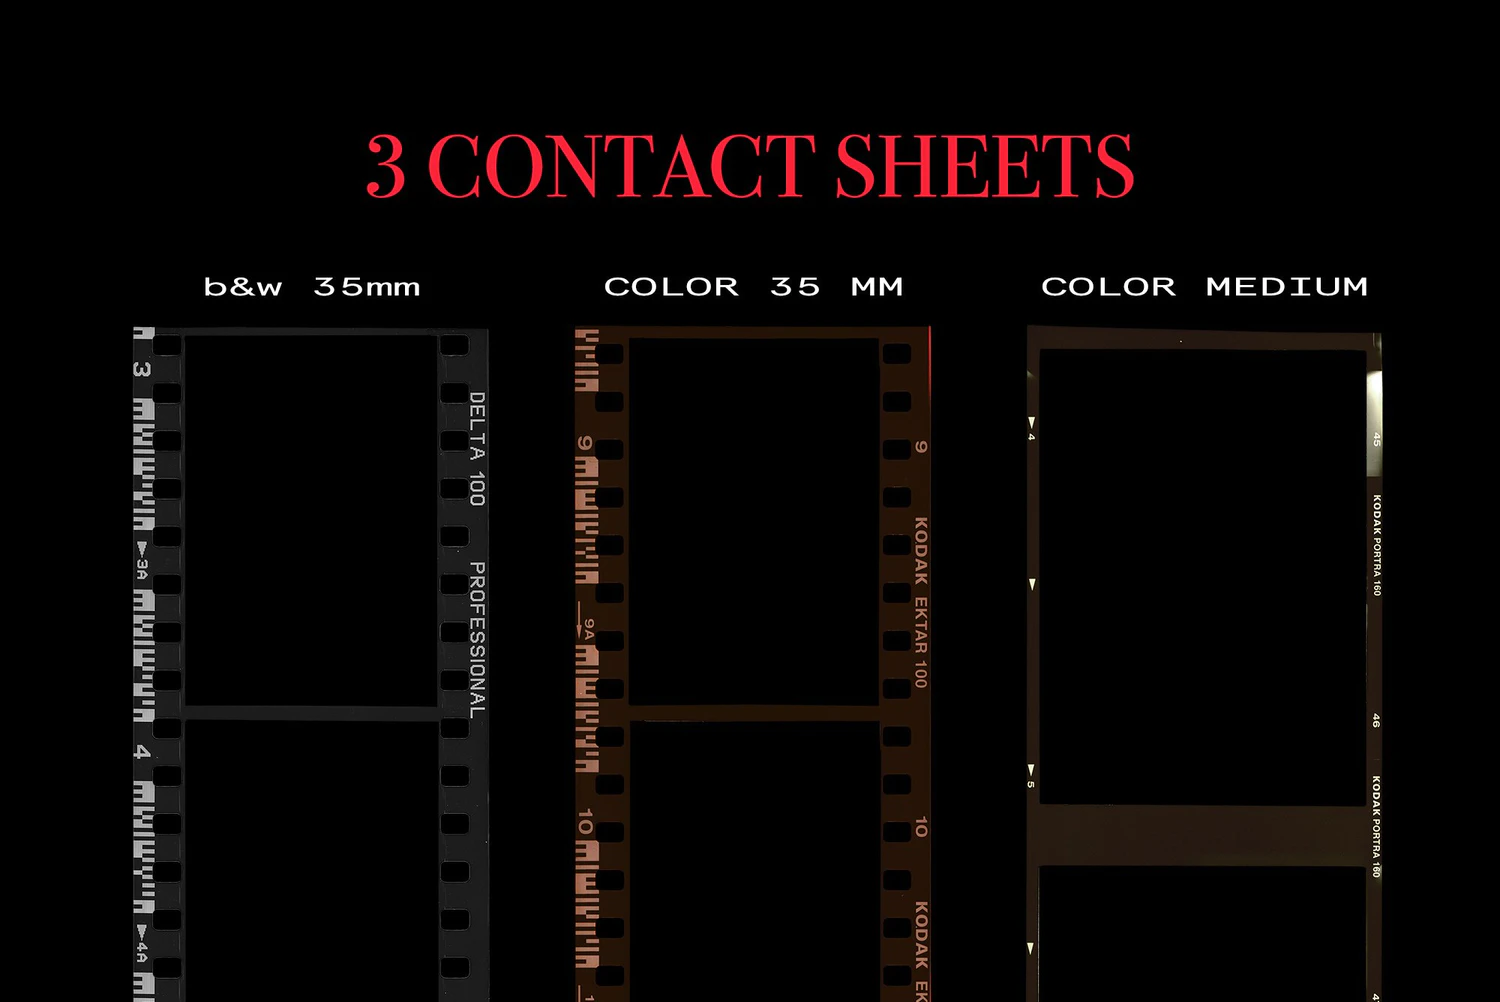 2651 复古老式怀旧电影胶卷胶片照片滤镜ps样机素材展示效果源文件模板 Contact Sheet Film Roll Mockup